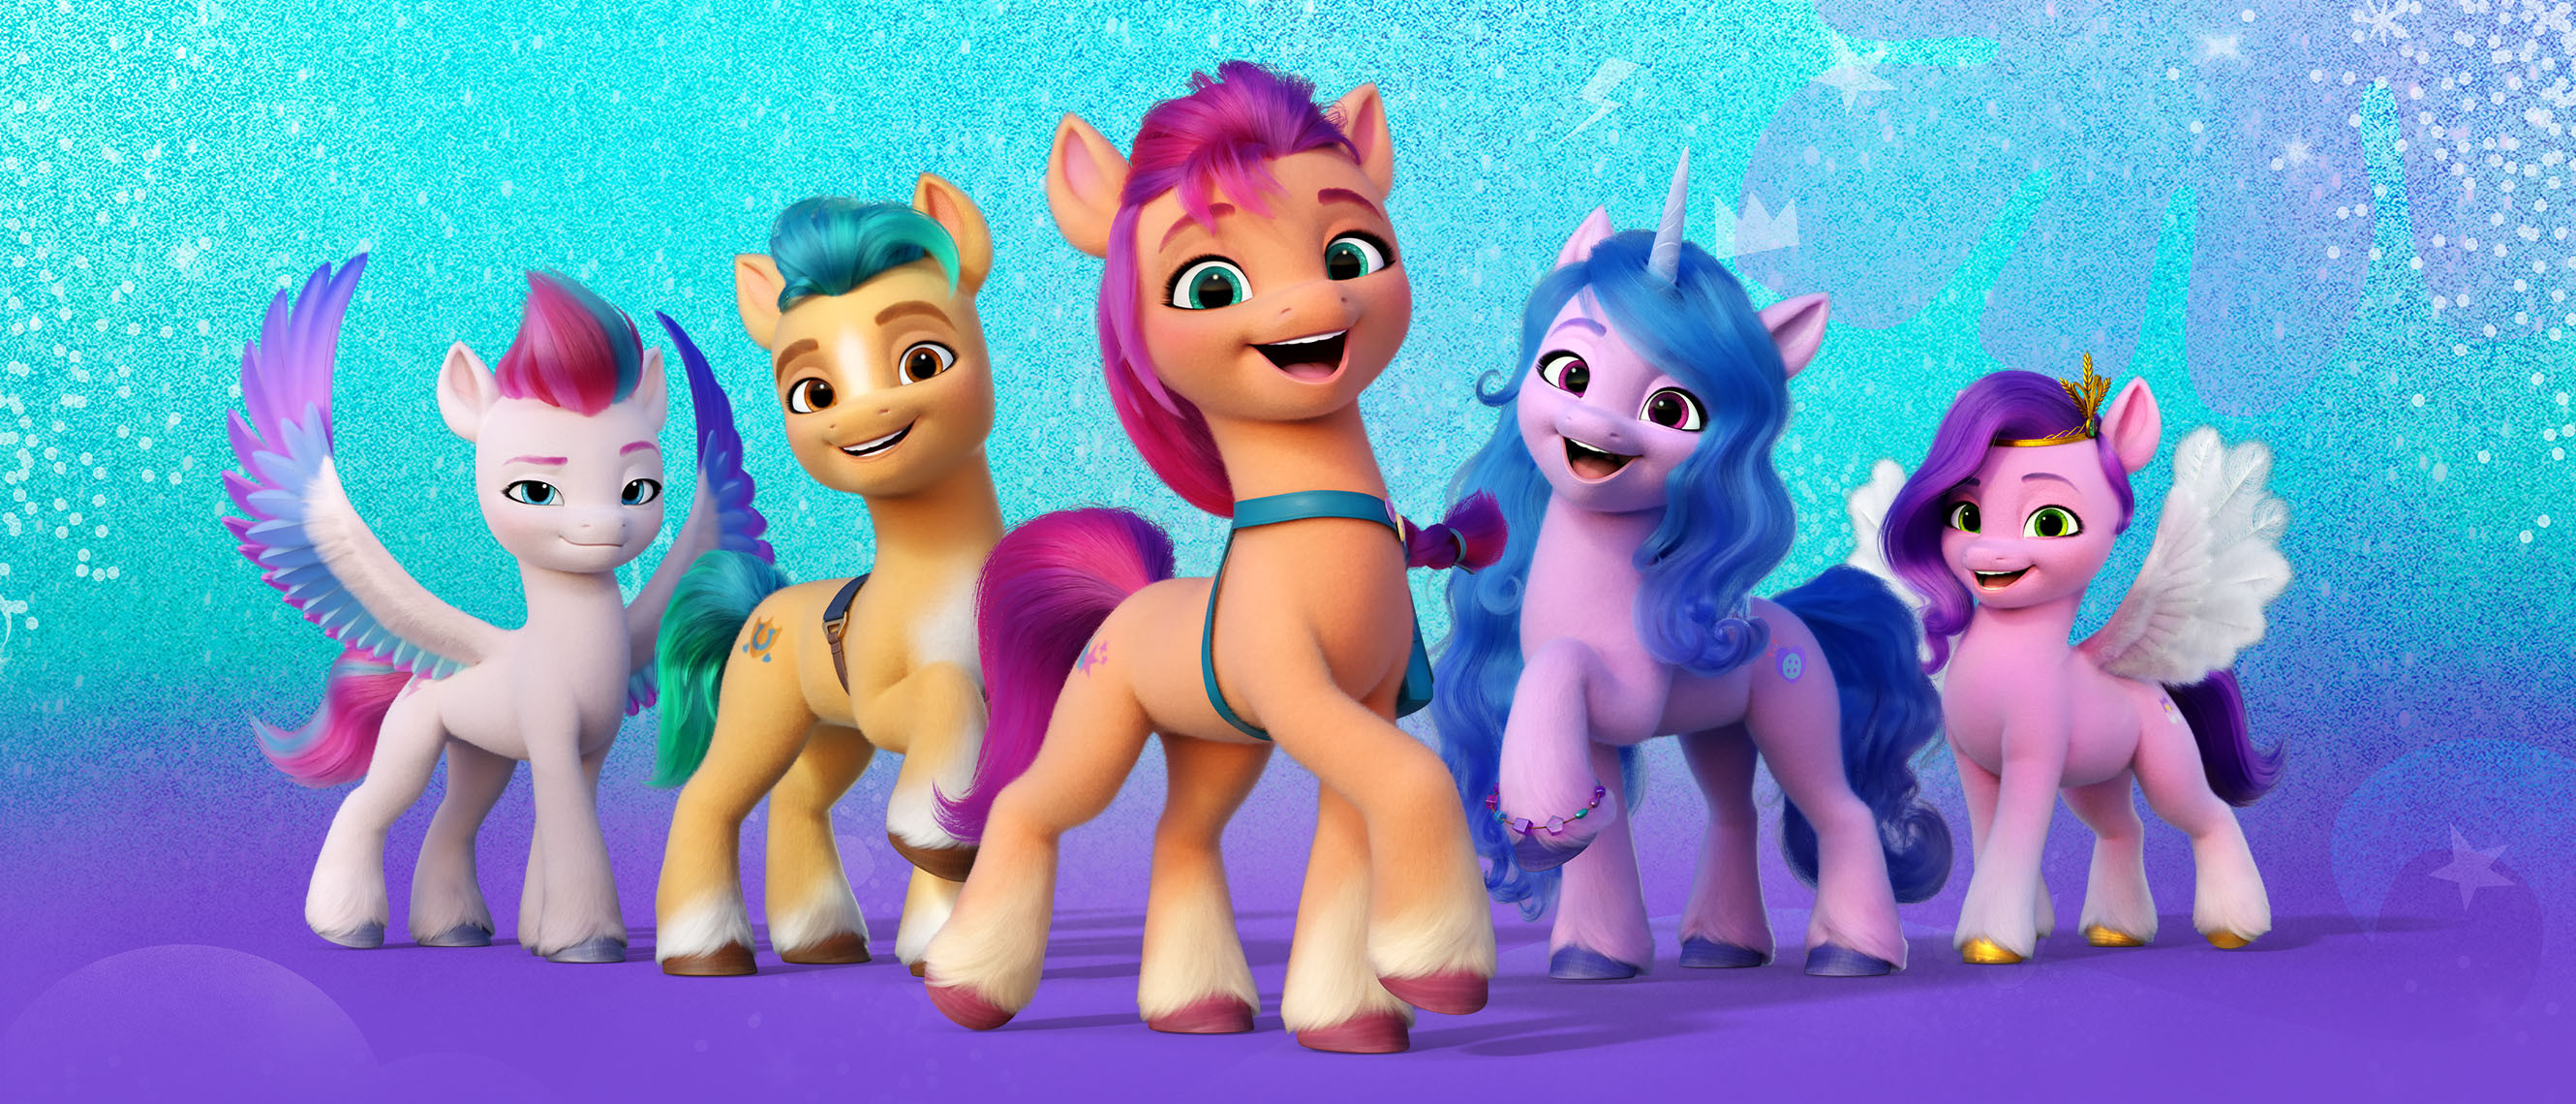 Скачать обои My Little Pony: Новое Поколение на телефон бесплатно